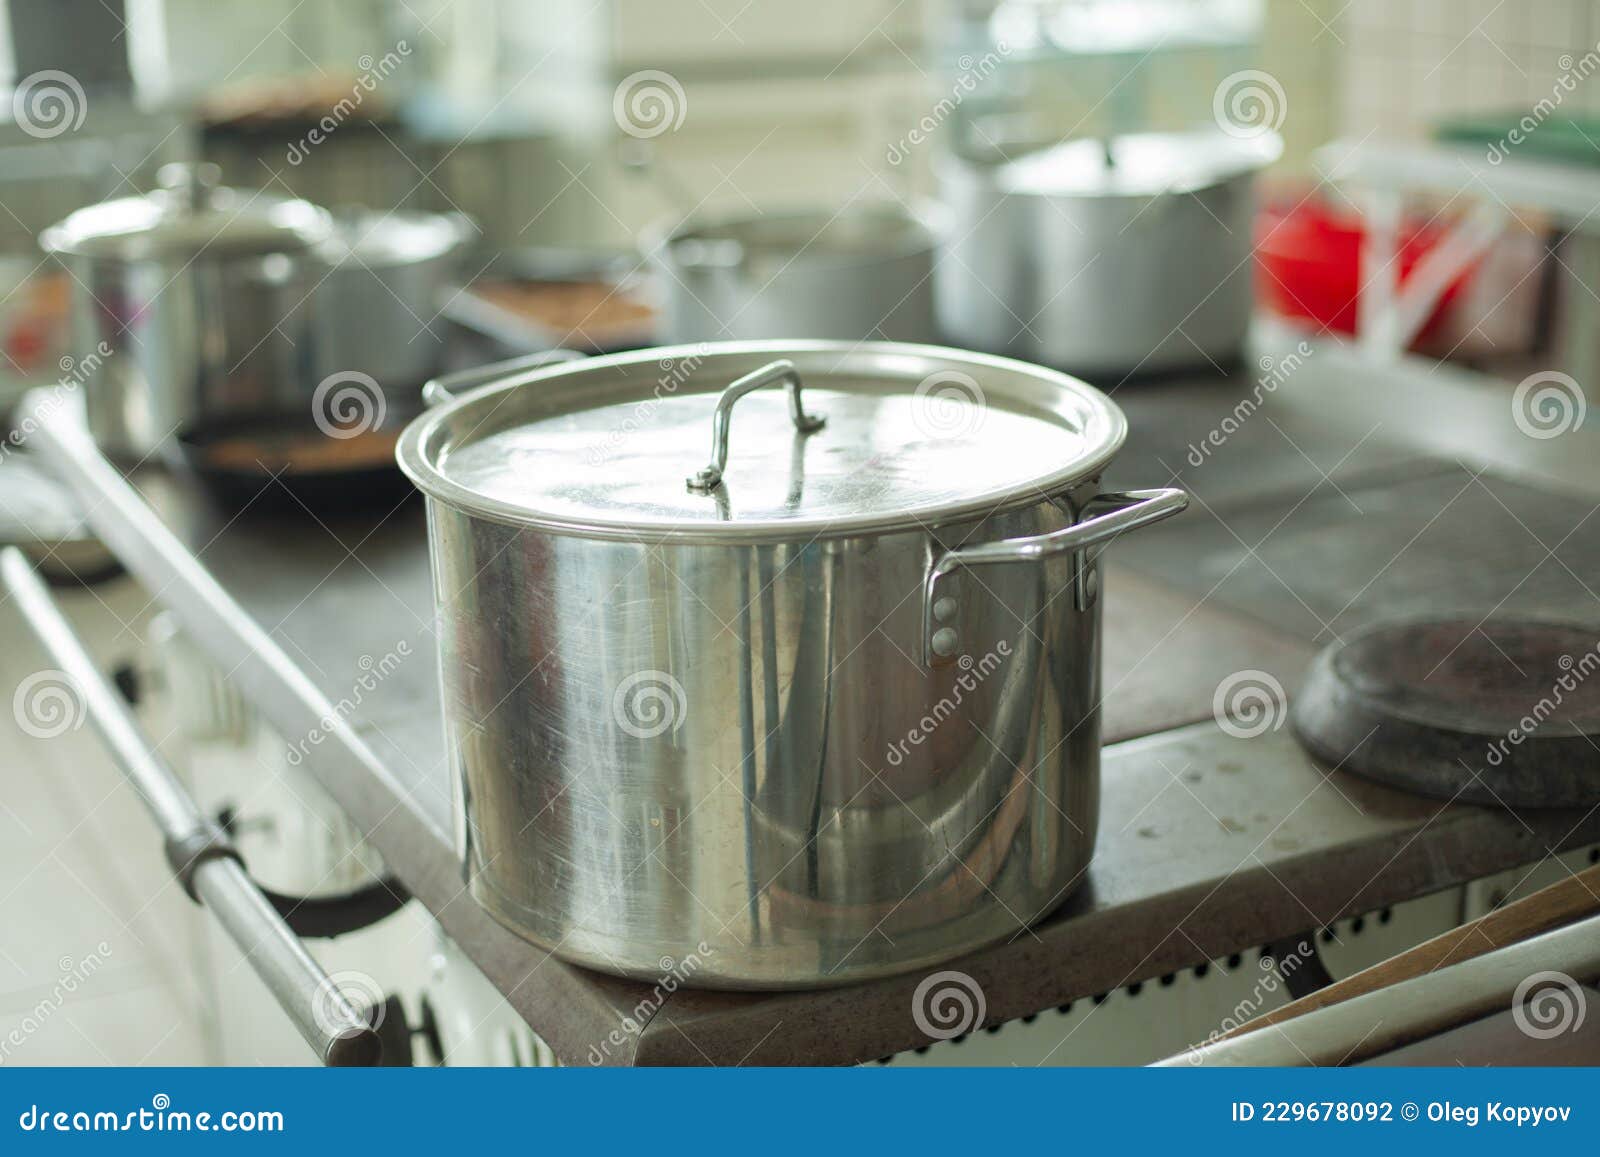 https://thumbs.dreamstime.com/z/olla-grande-para-cocinar-utensilios-de-cocina-en-el-comedor-tanque-agua-acero-inoxidable-platos-la-229678092.jpg